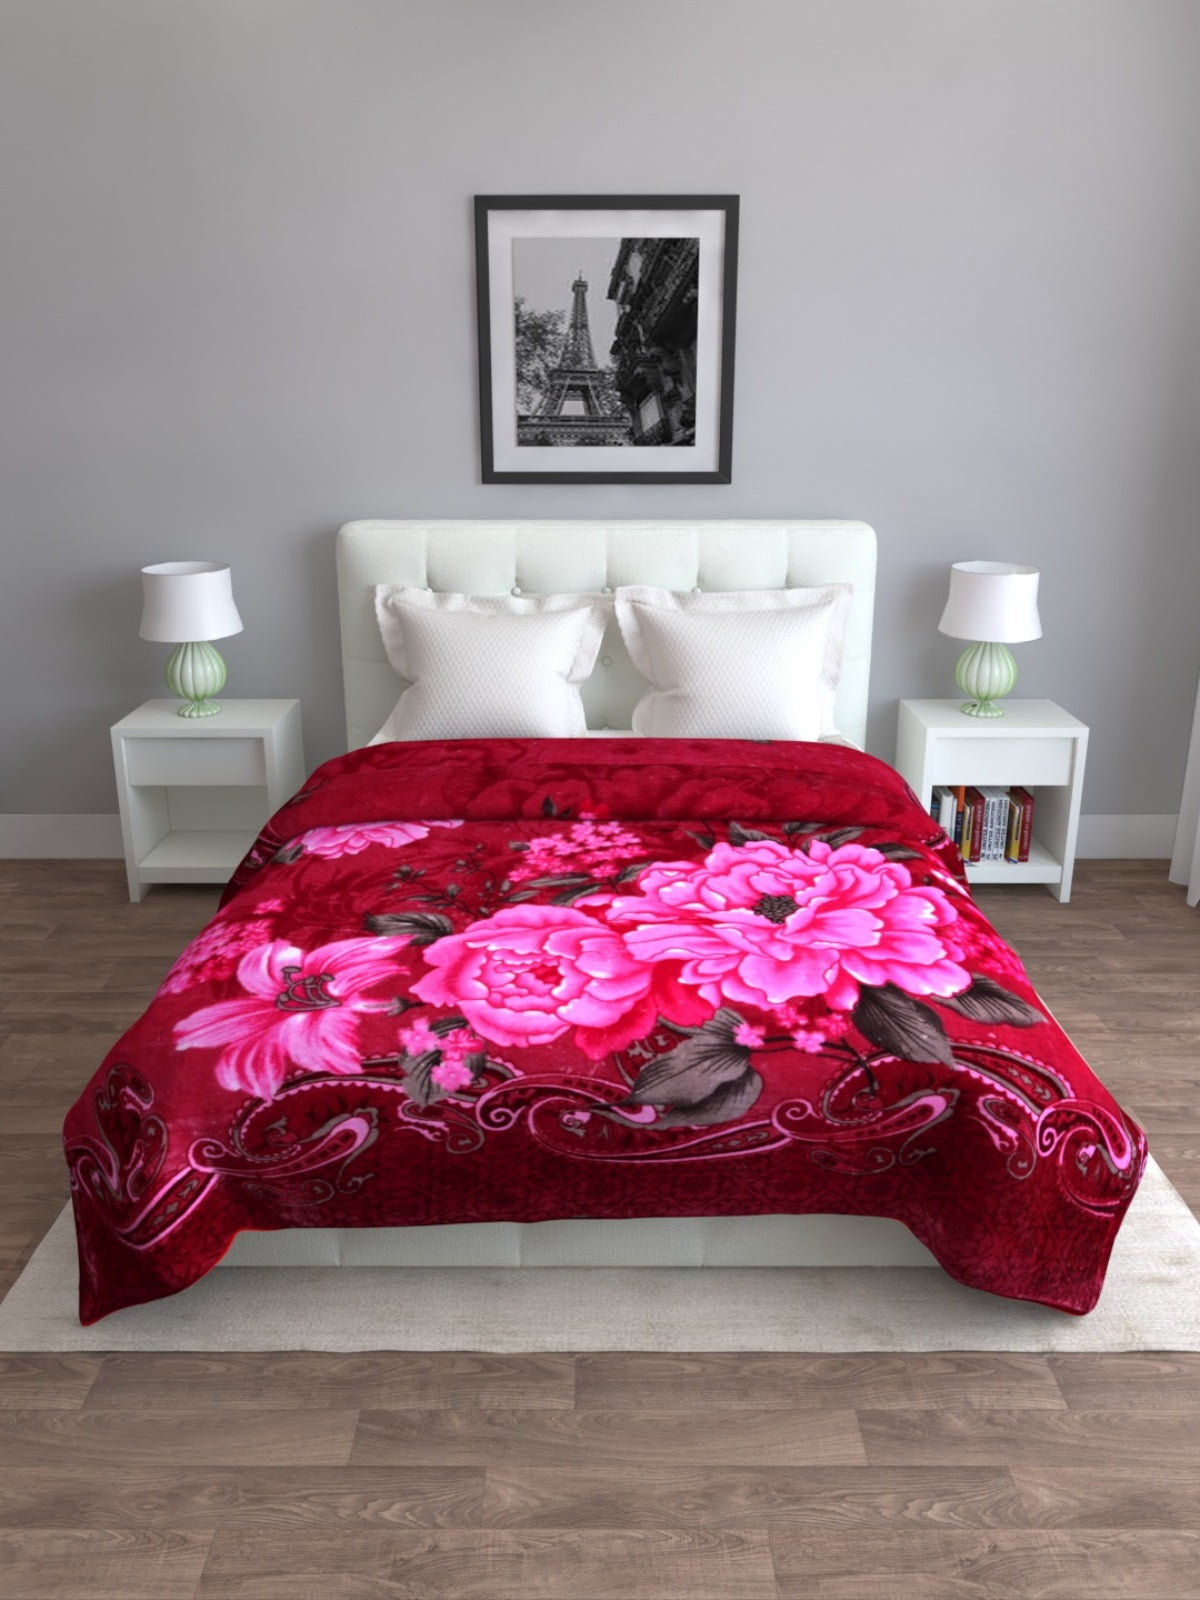 Maroon & Pink AC Room 800 GSM Mink Blanket Microfiber Wool